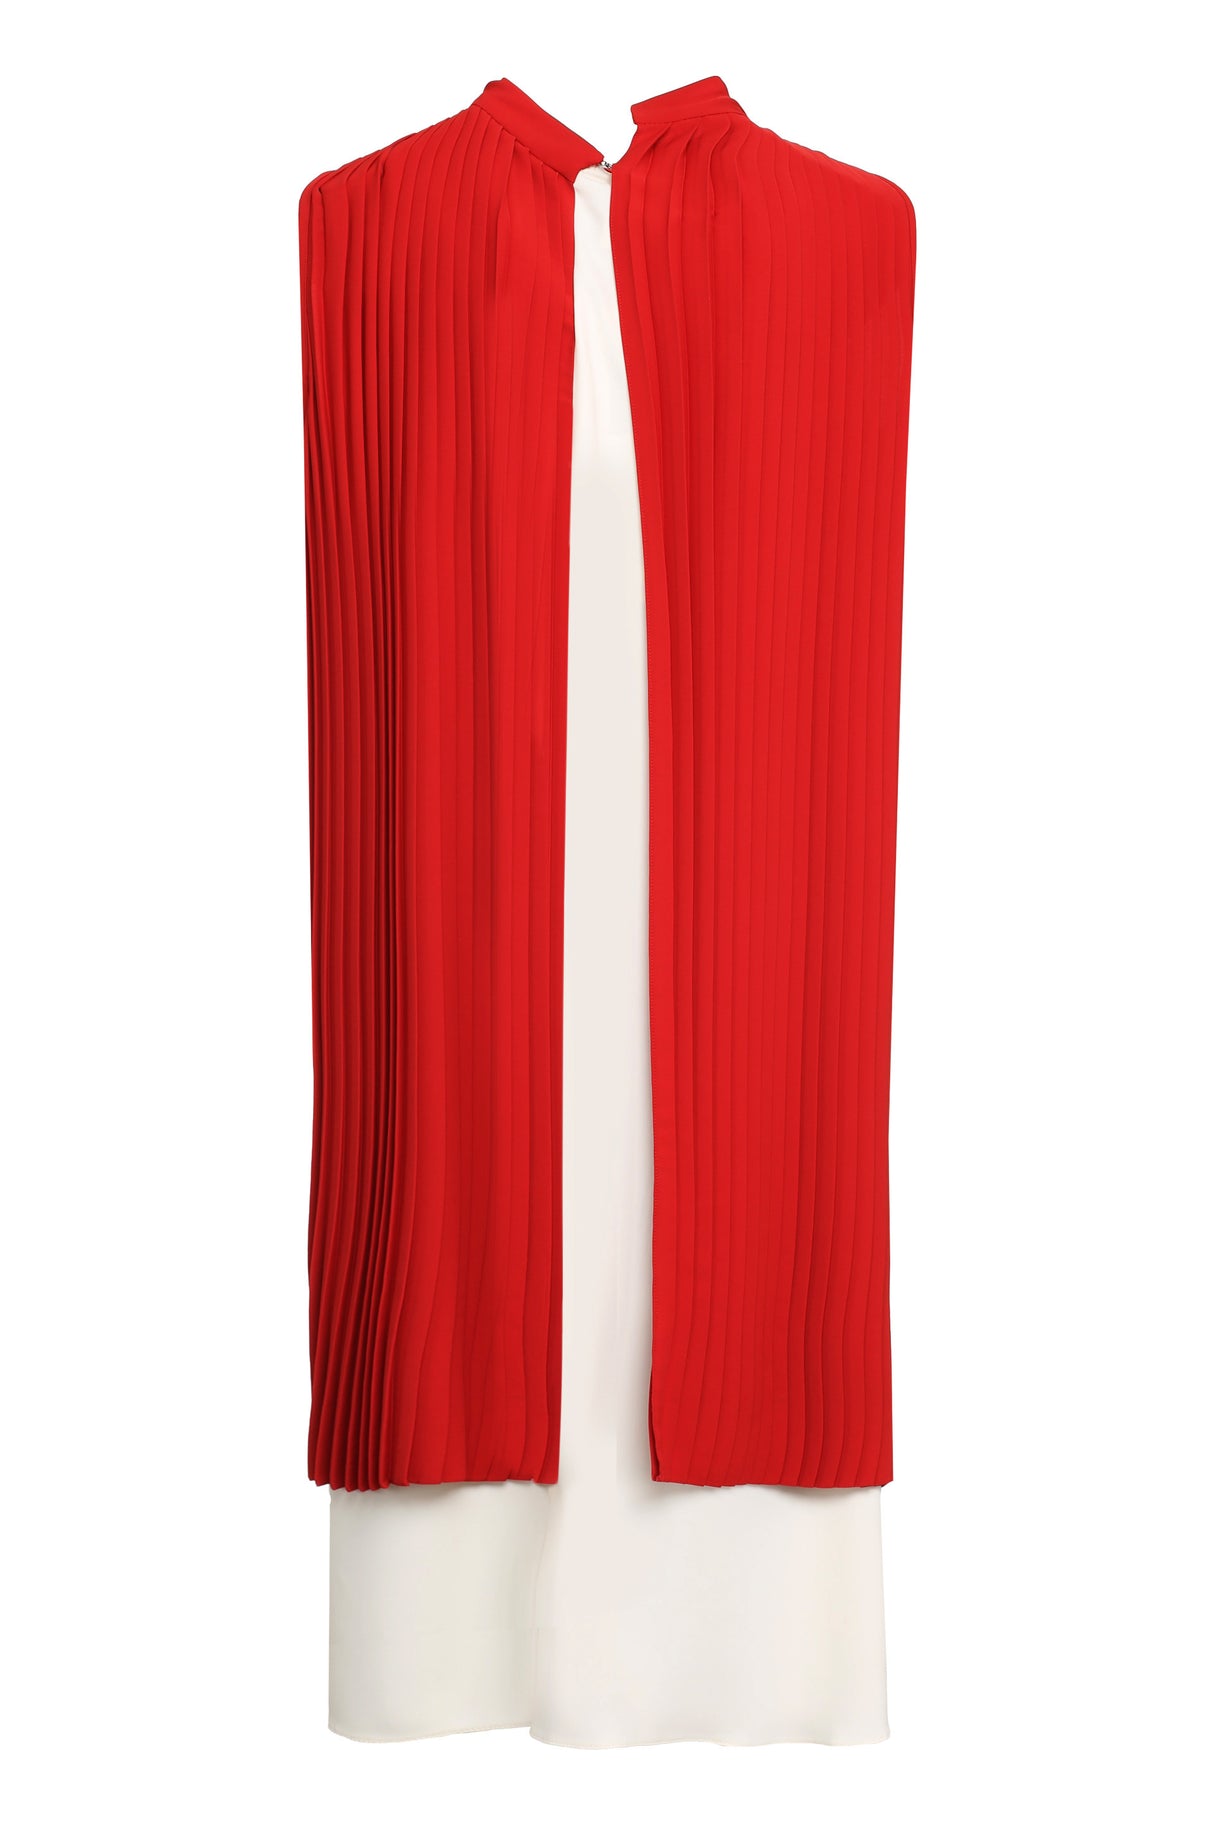 Đầm Pleated Layered đỏ với cúc dây cho phái nữ